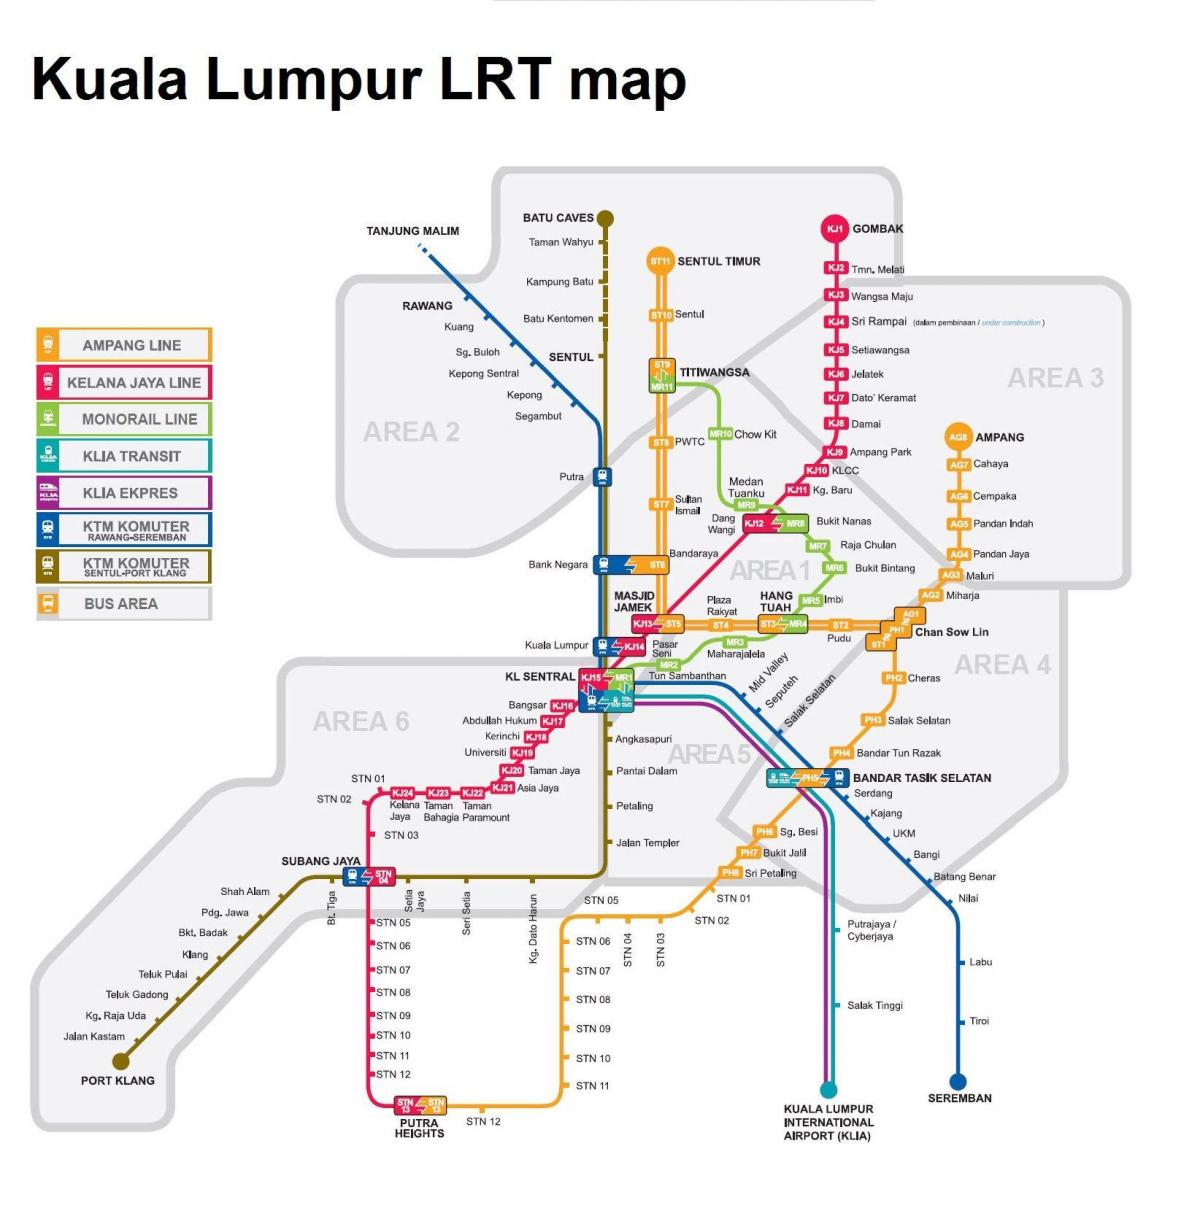 LRT քարտեզ Կուալա-Լումպուր Մալայզիա